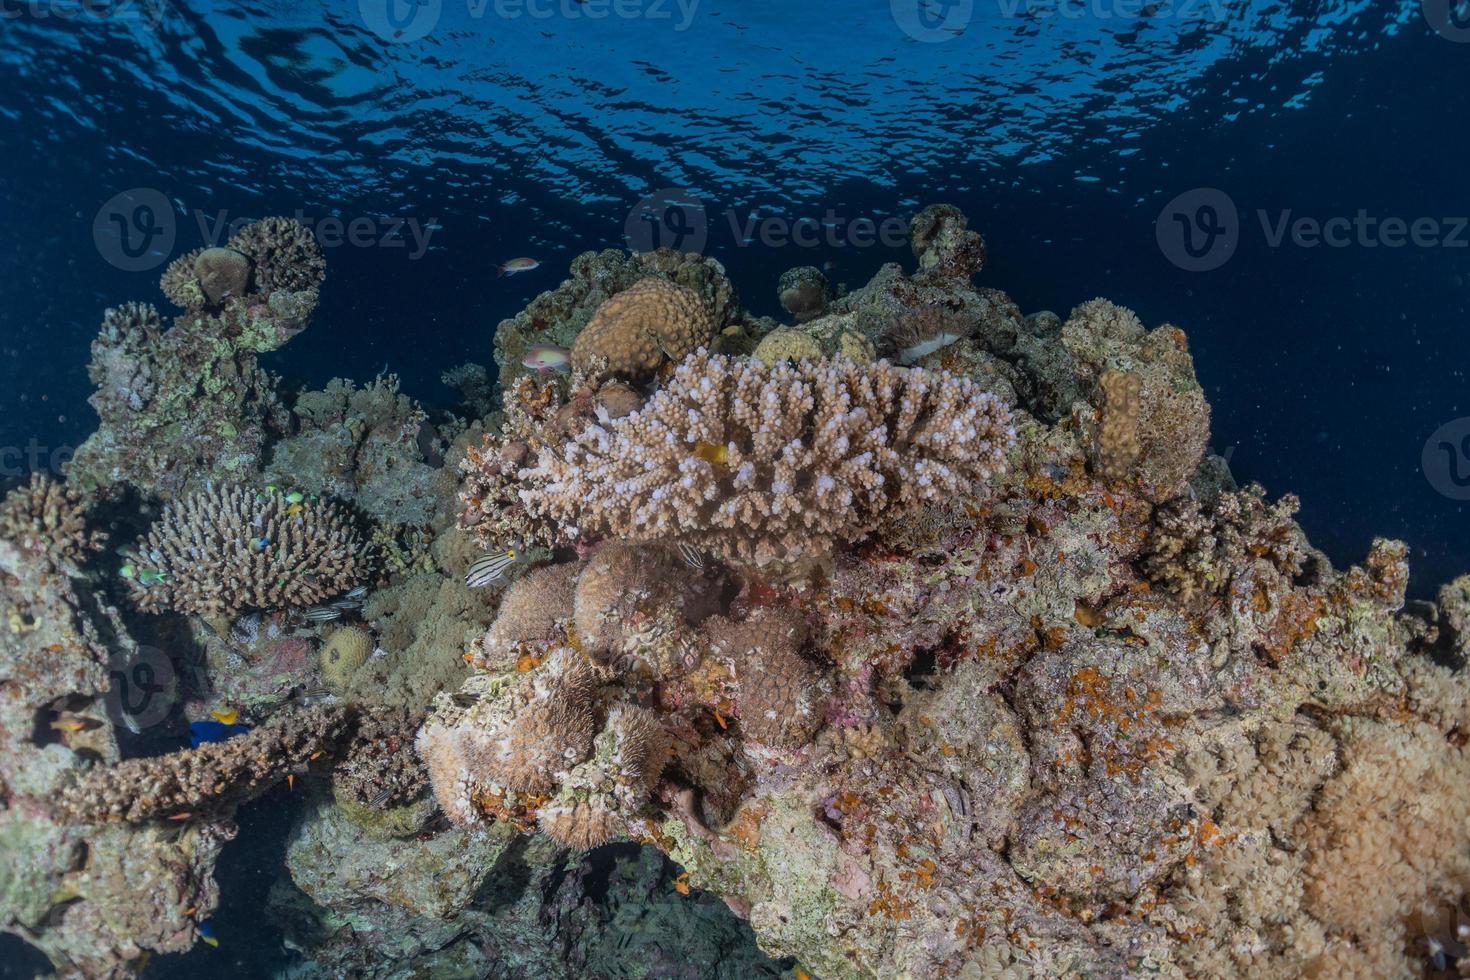 koraalrif en waterplanten in de rode zee, eilat israël foto